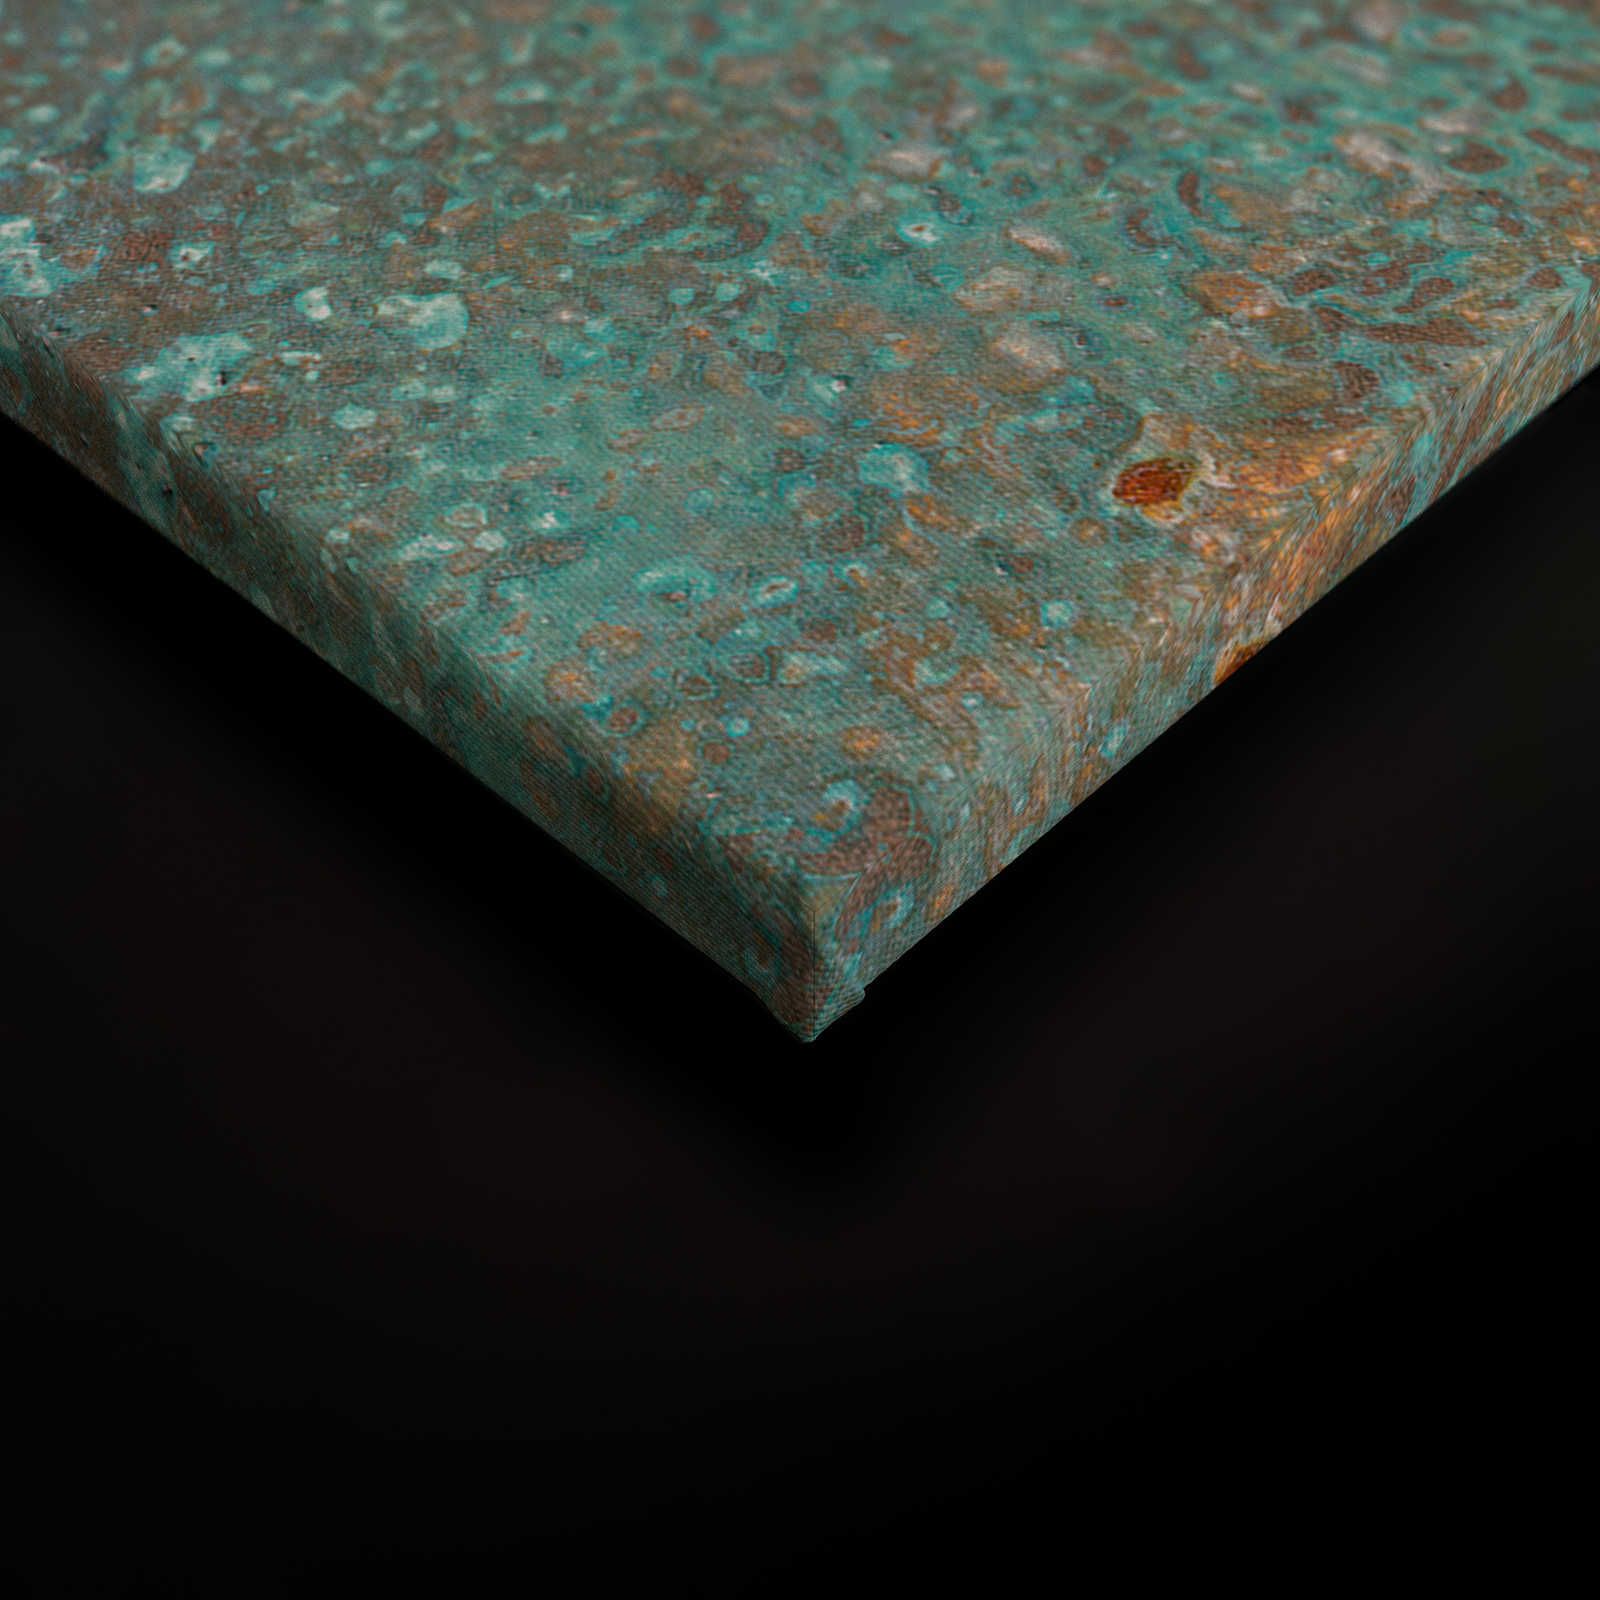             Metalloptik Leinwandbild türkise Patina mit Rost – 1,20 m x 0,80 m
        